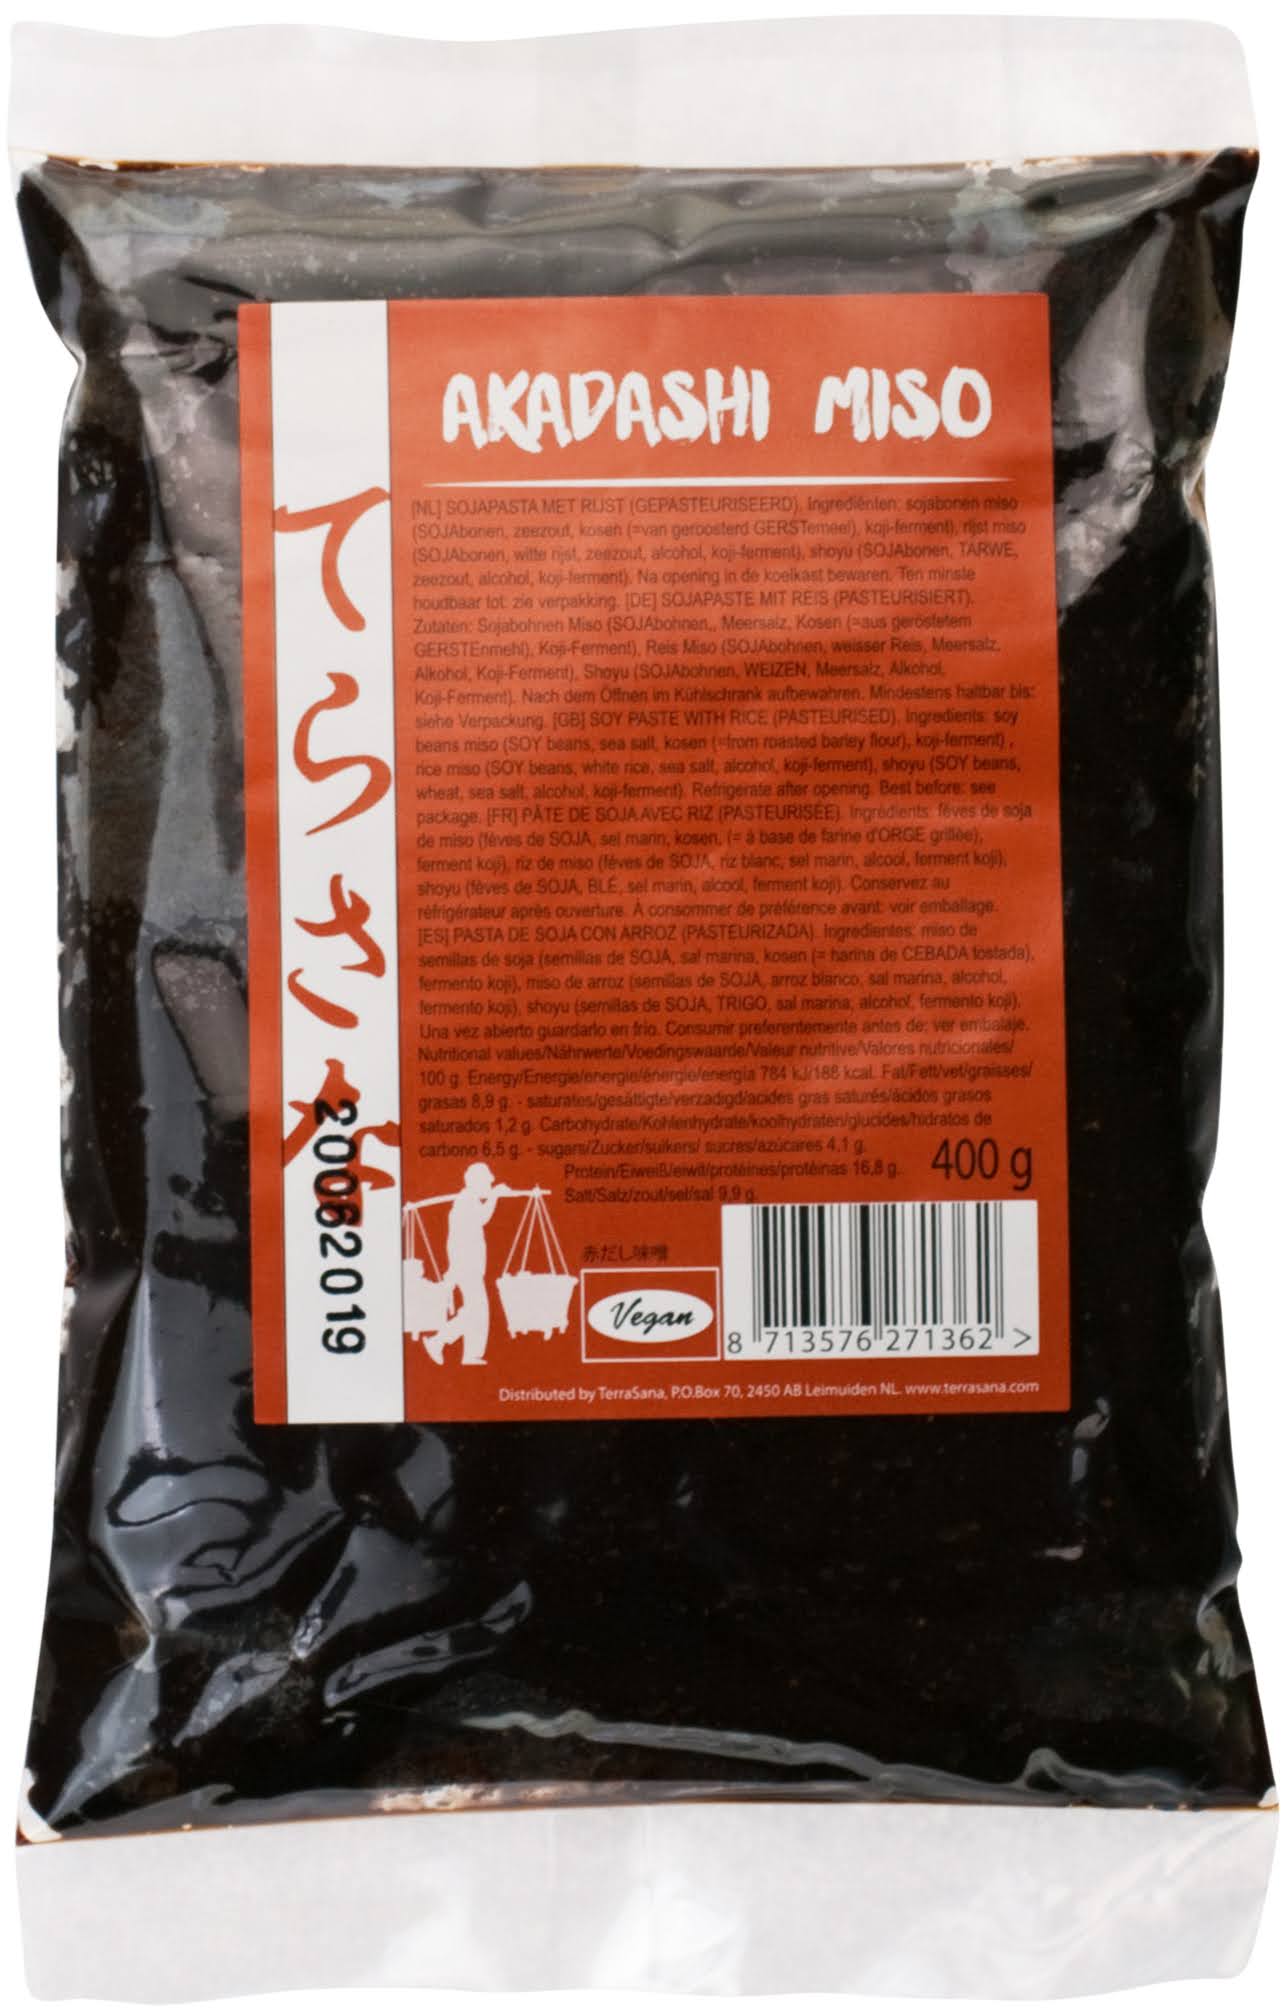 Akadashi Miso